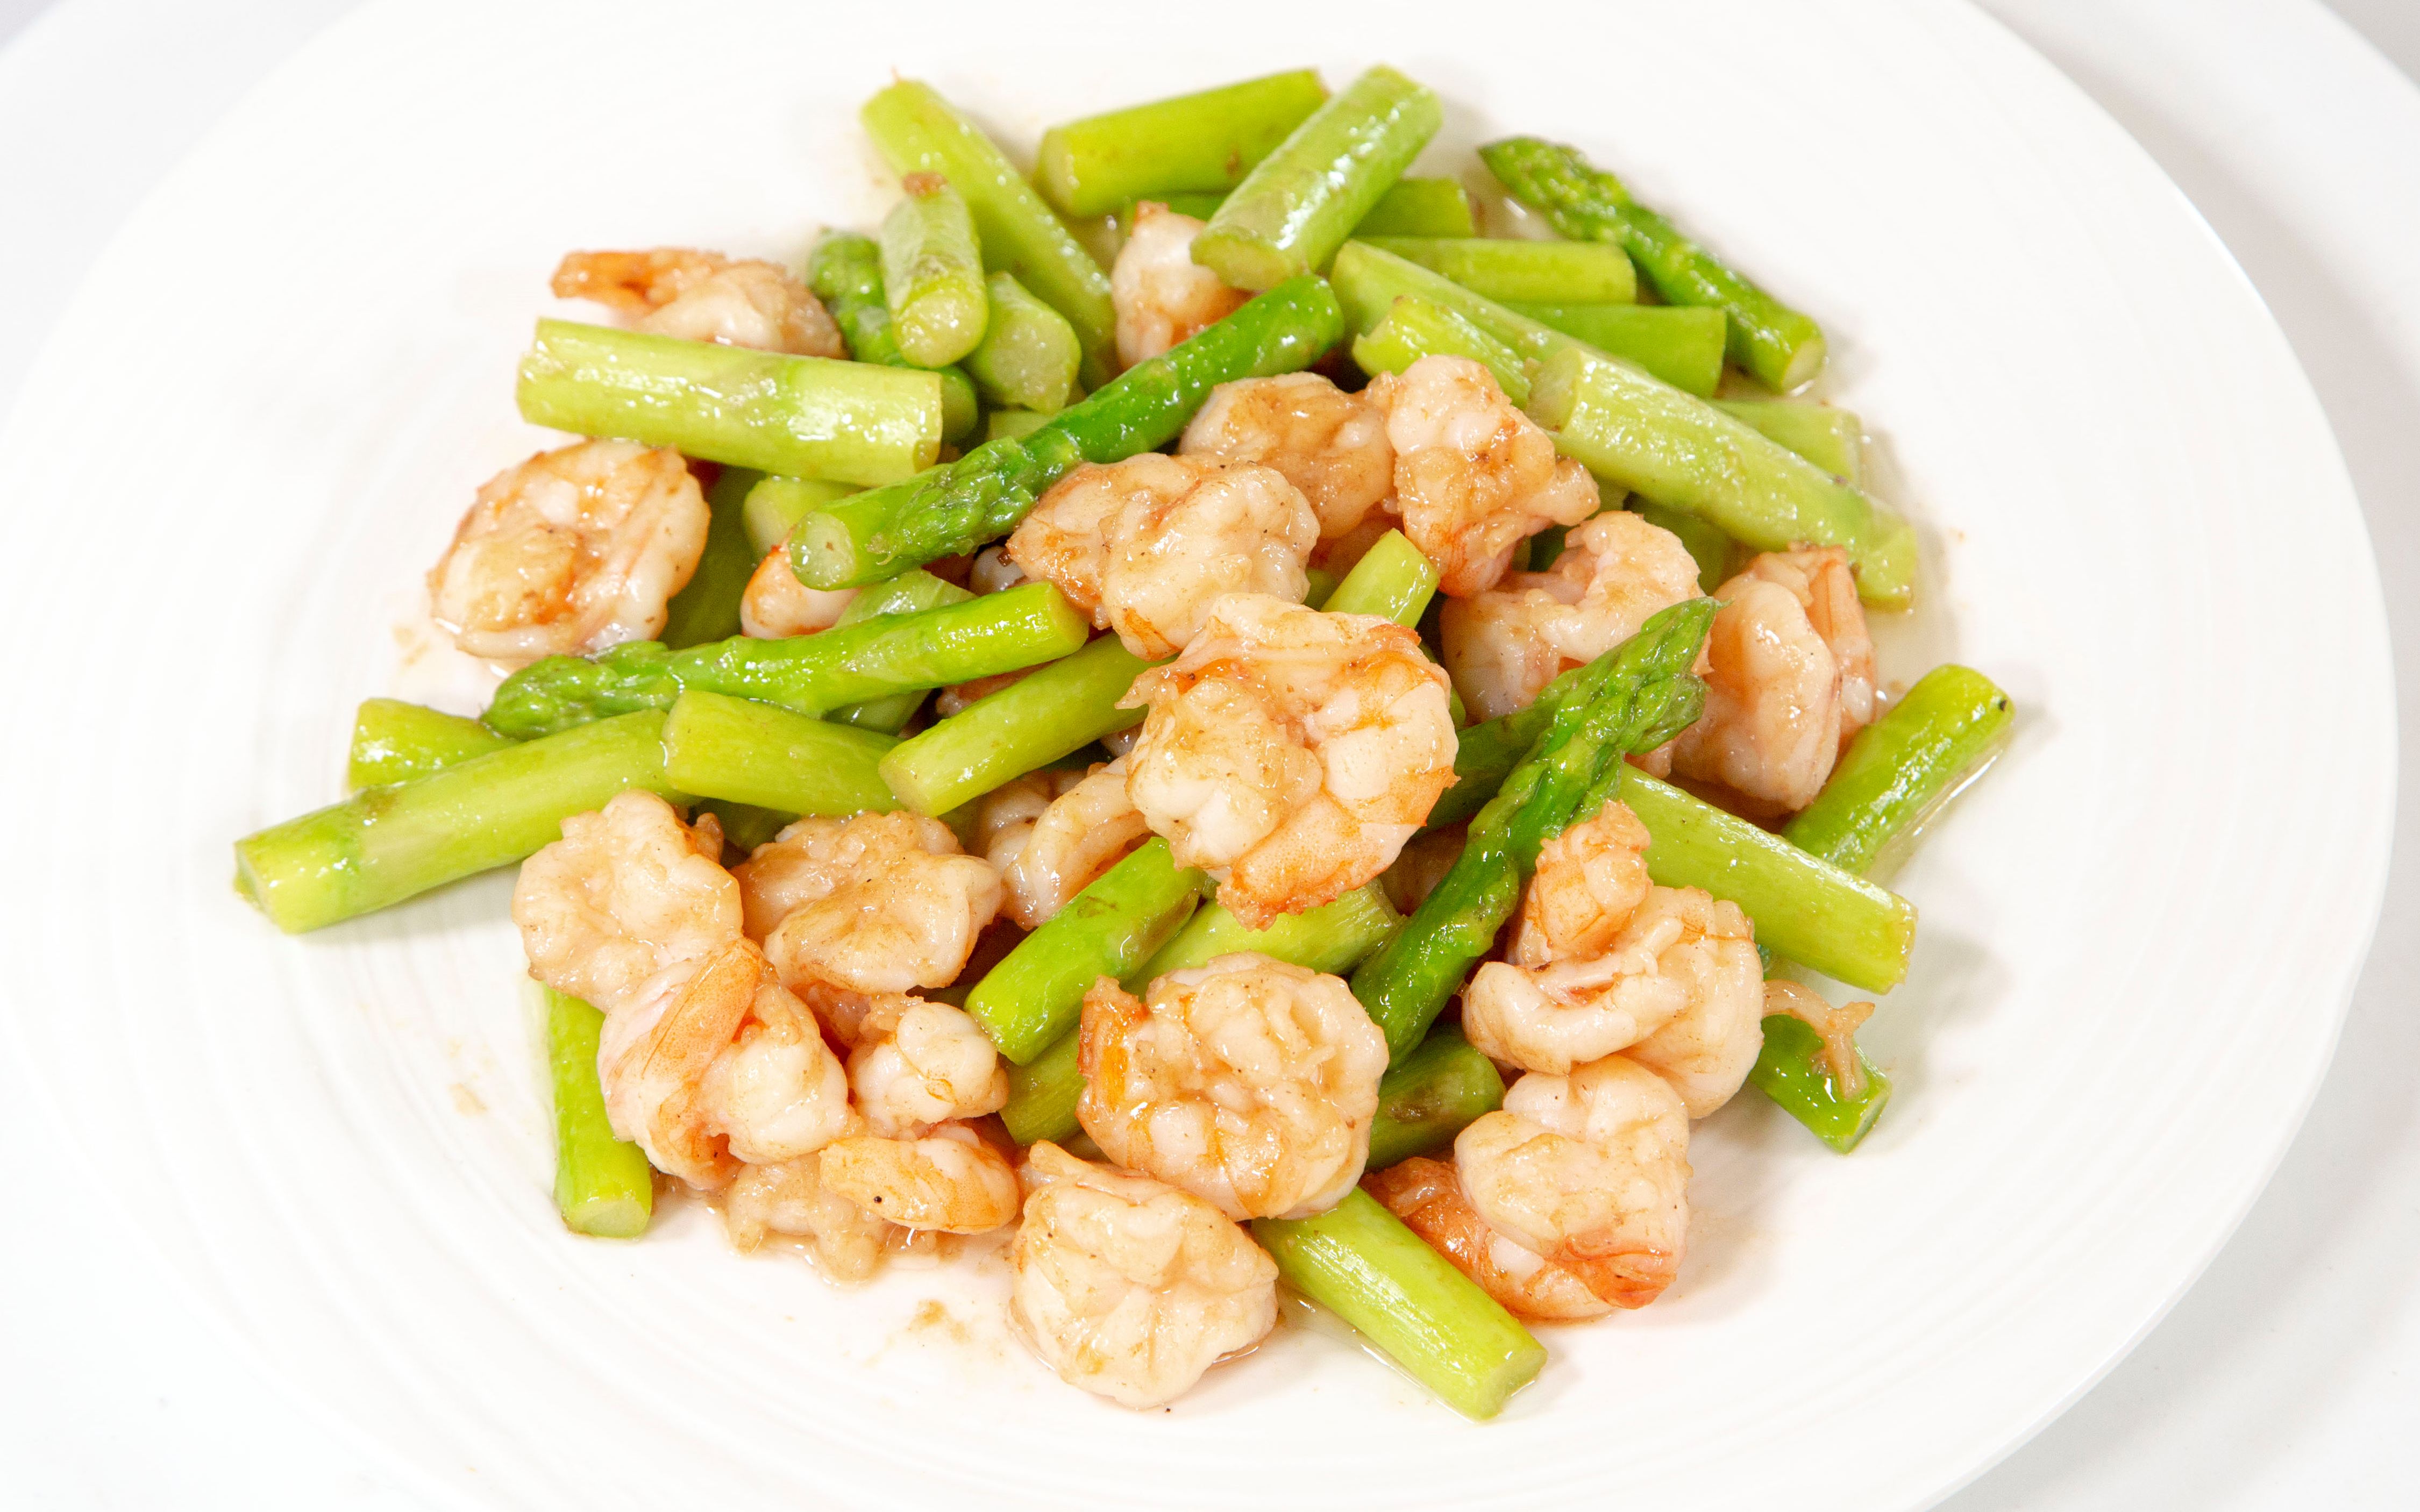 芦笋炒虾仁做法简单营养丰富的家常菜,赶紧动手试一试吧!